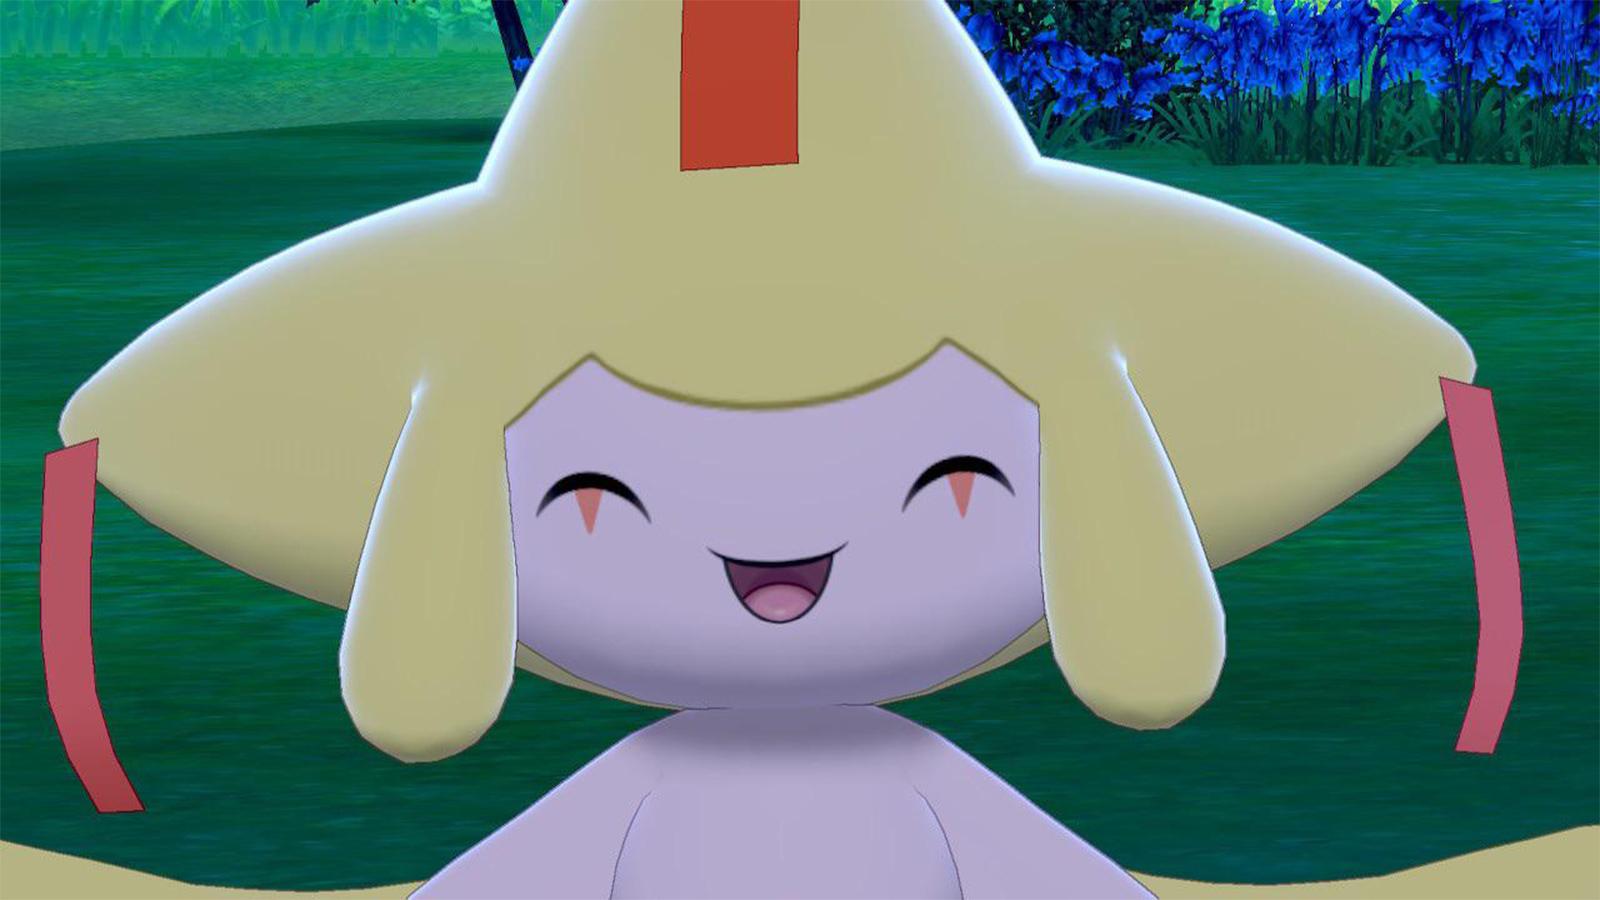 Jirachi Shiny in Pokémon GO: How to get it - Meristation